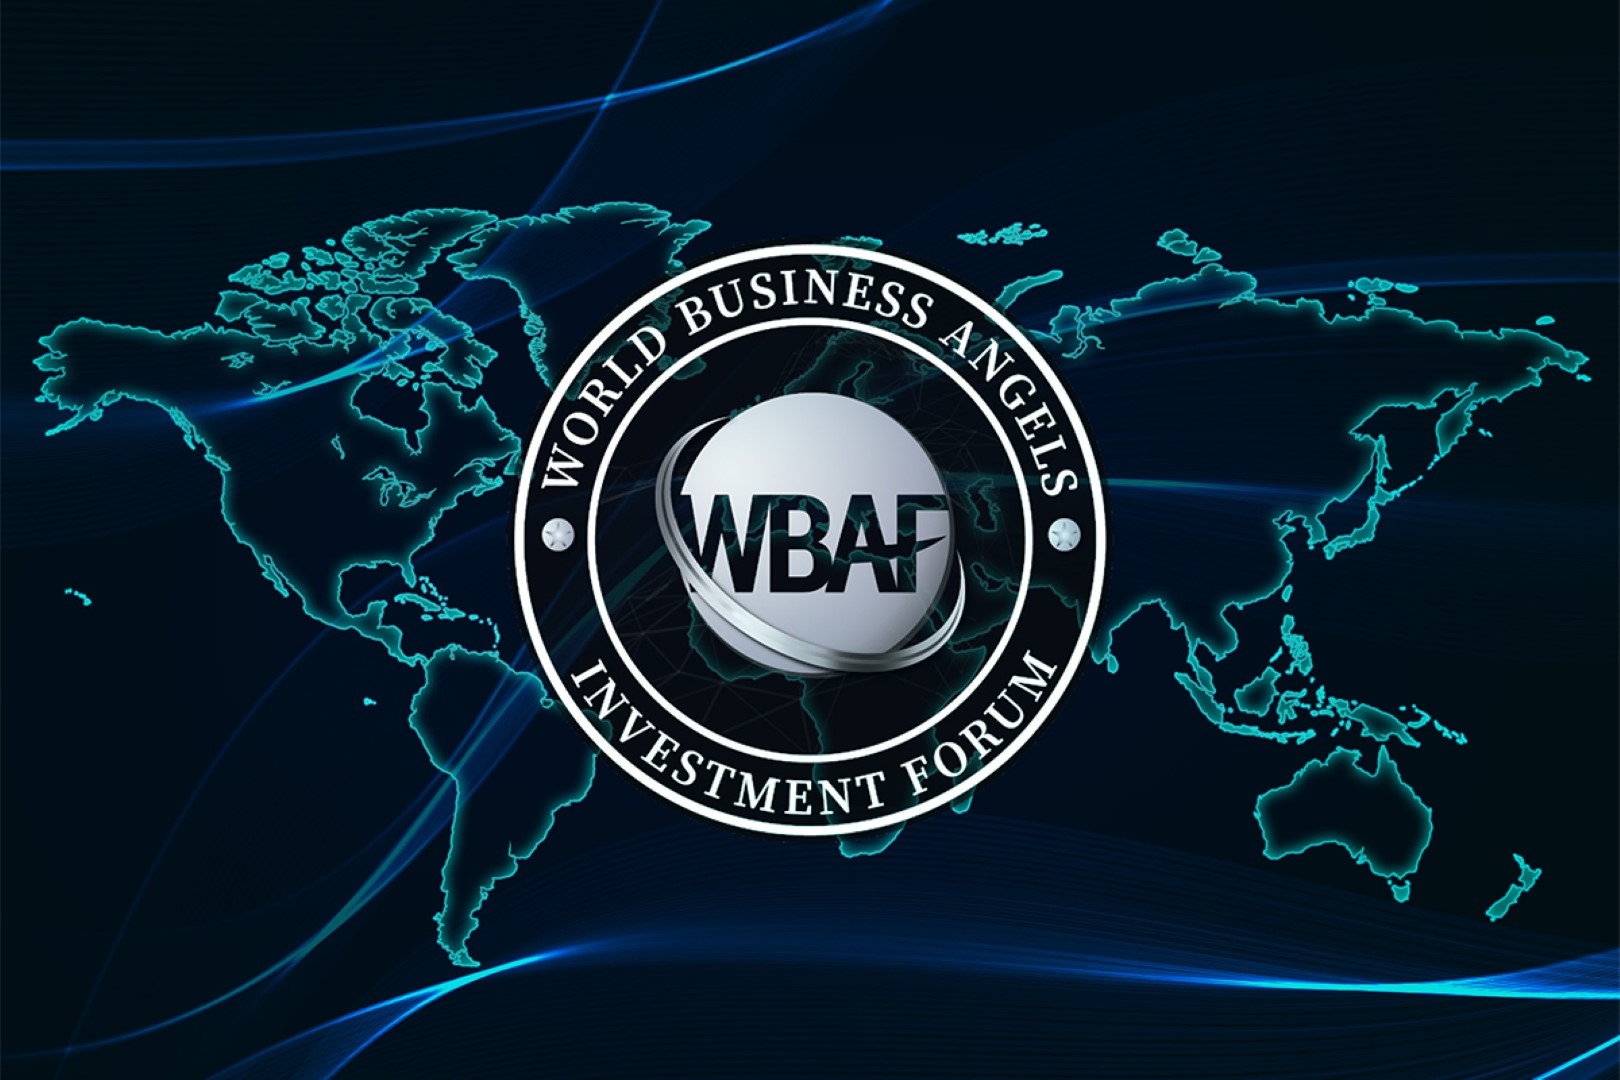 wbaf_investors_week